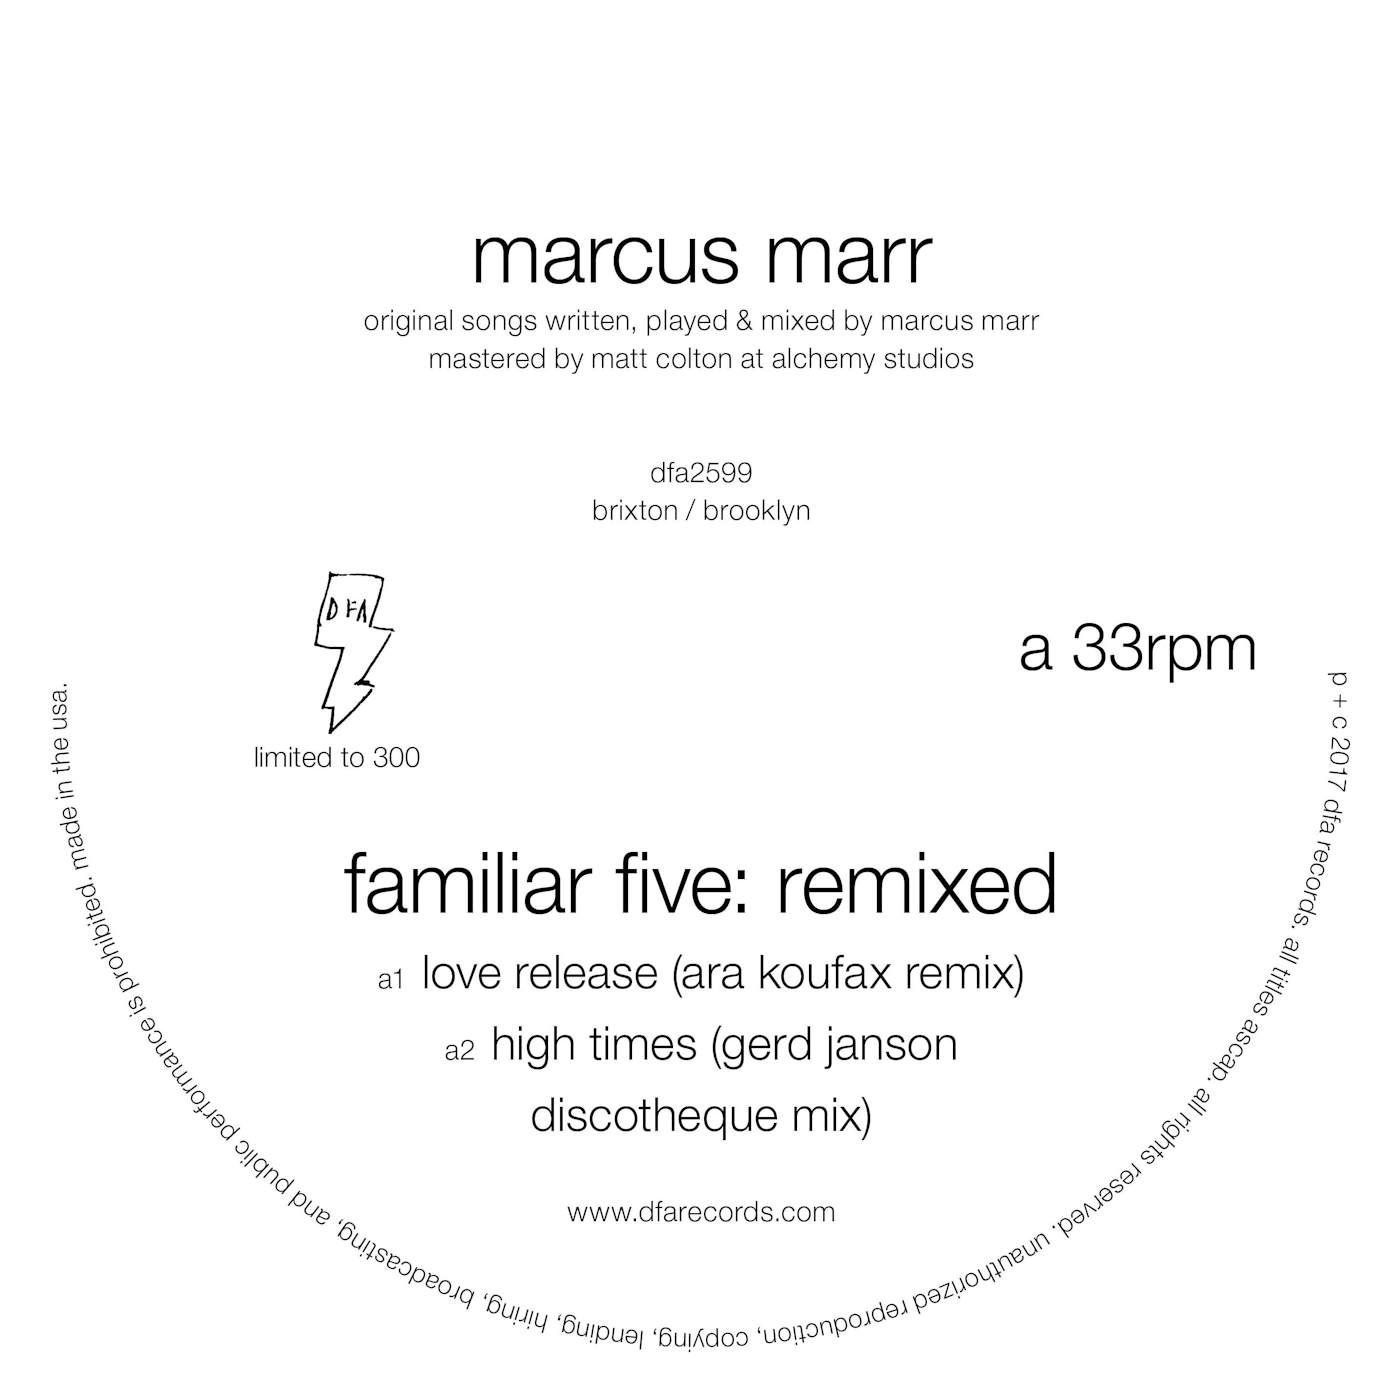 Marcus Marr Familiar Five: Remixed Vinyl Record